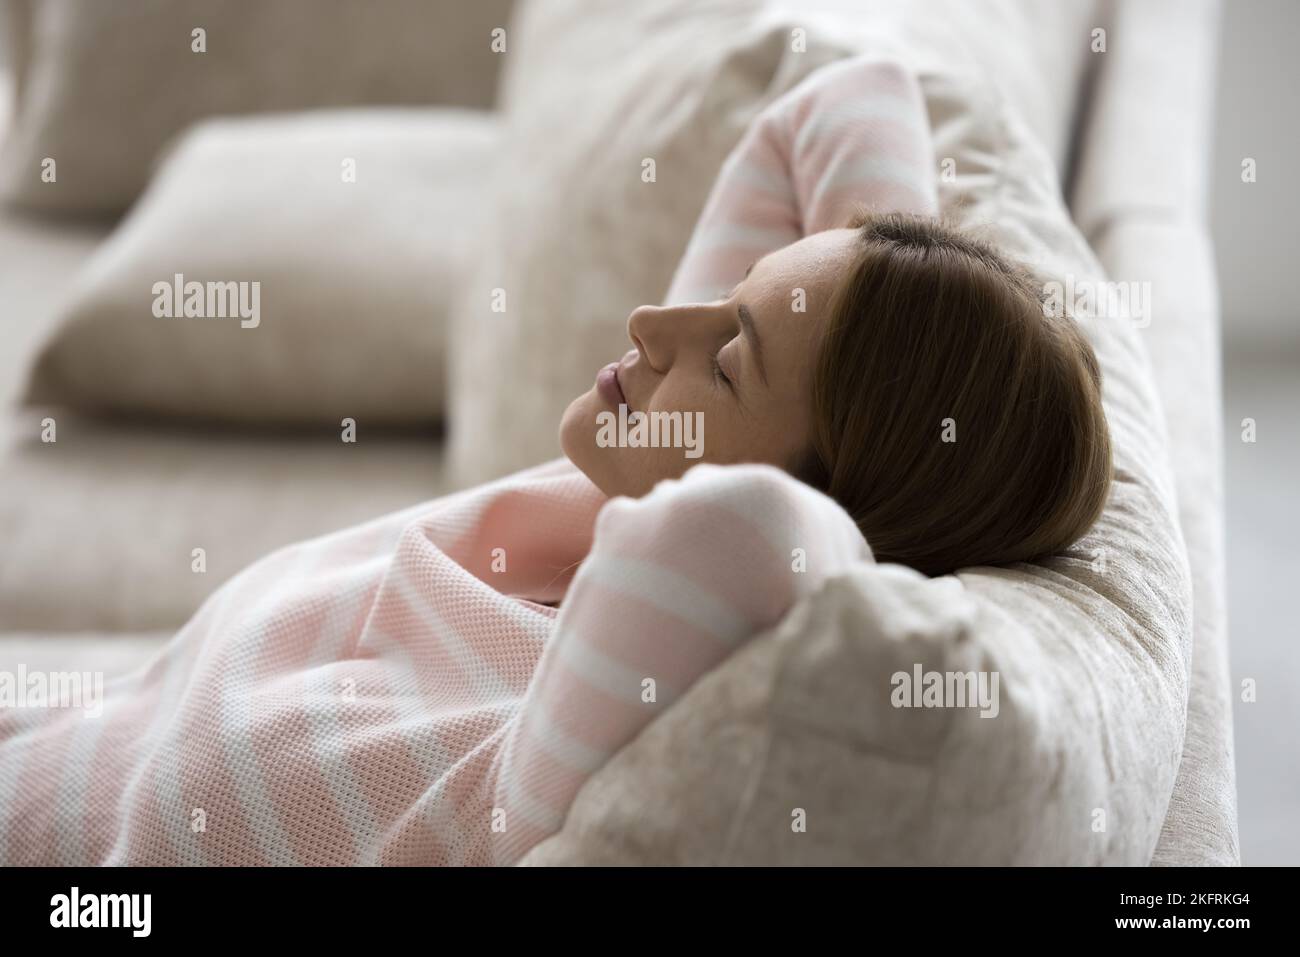 Una mujer tranquila descansando se apoyó en cómodos sofás cojines, vista superior Foto de stock